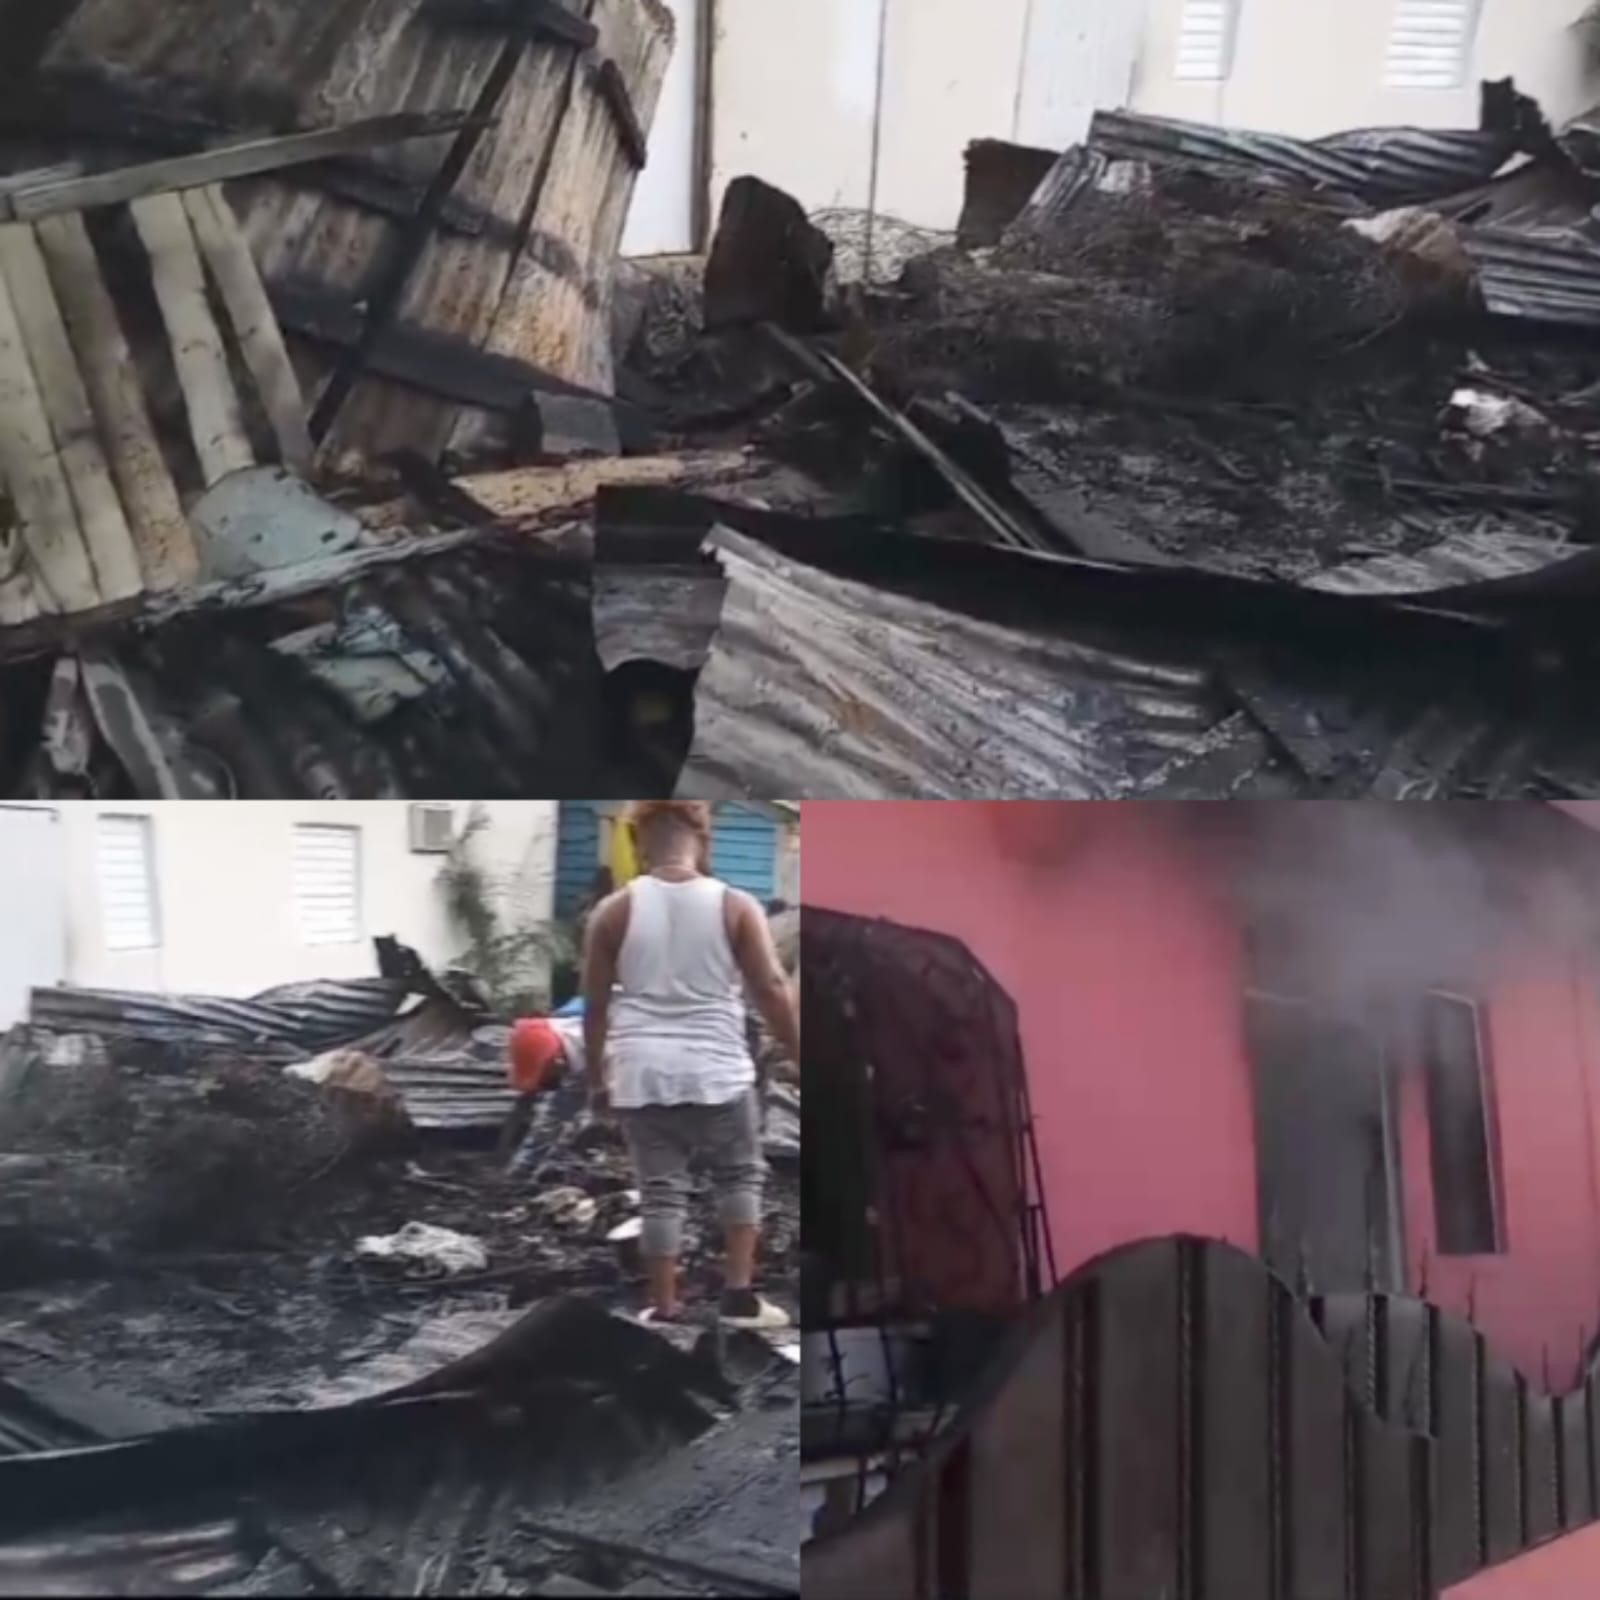    Incendio destruye 4 casuchas en populoso sector de Puerto Plata, no hubo lesionados   